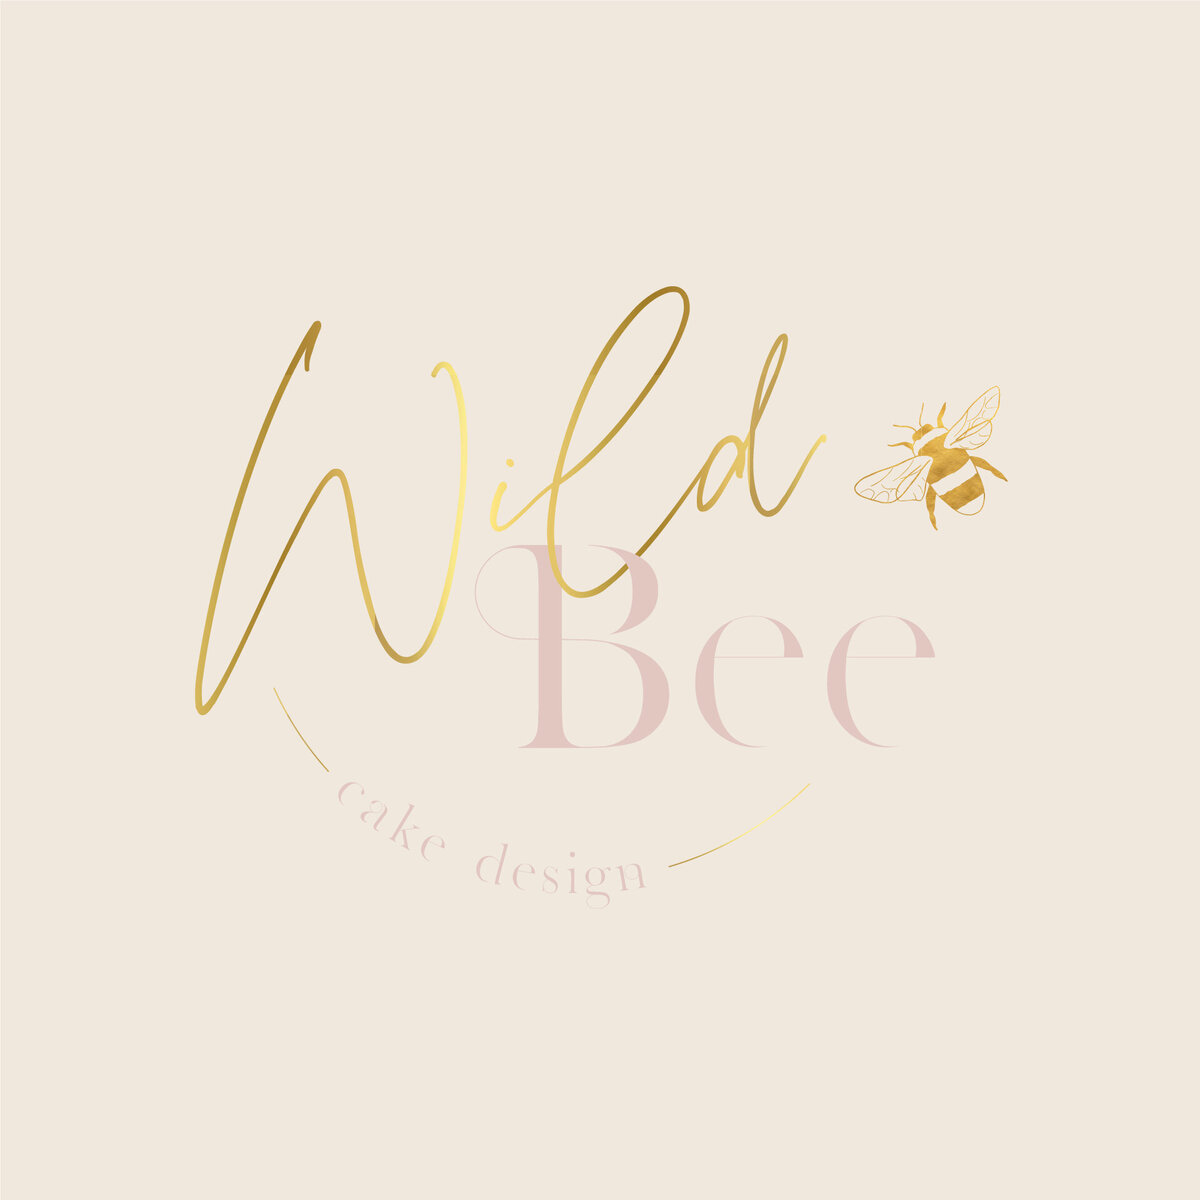 WildBeeCakeDesign_GoldFoilLogo_Blush-01